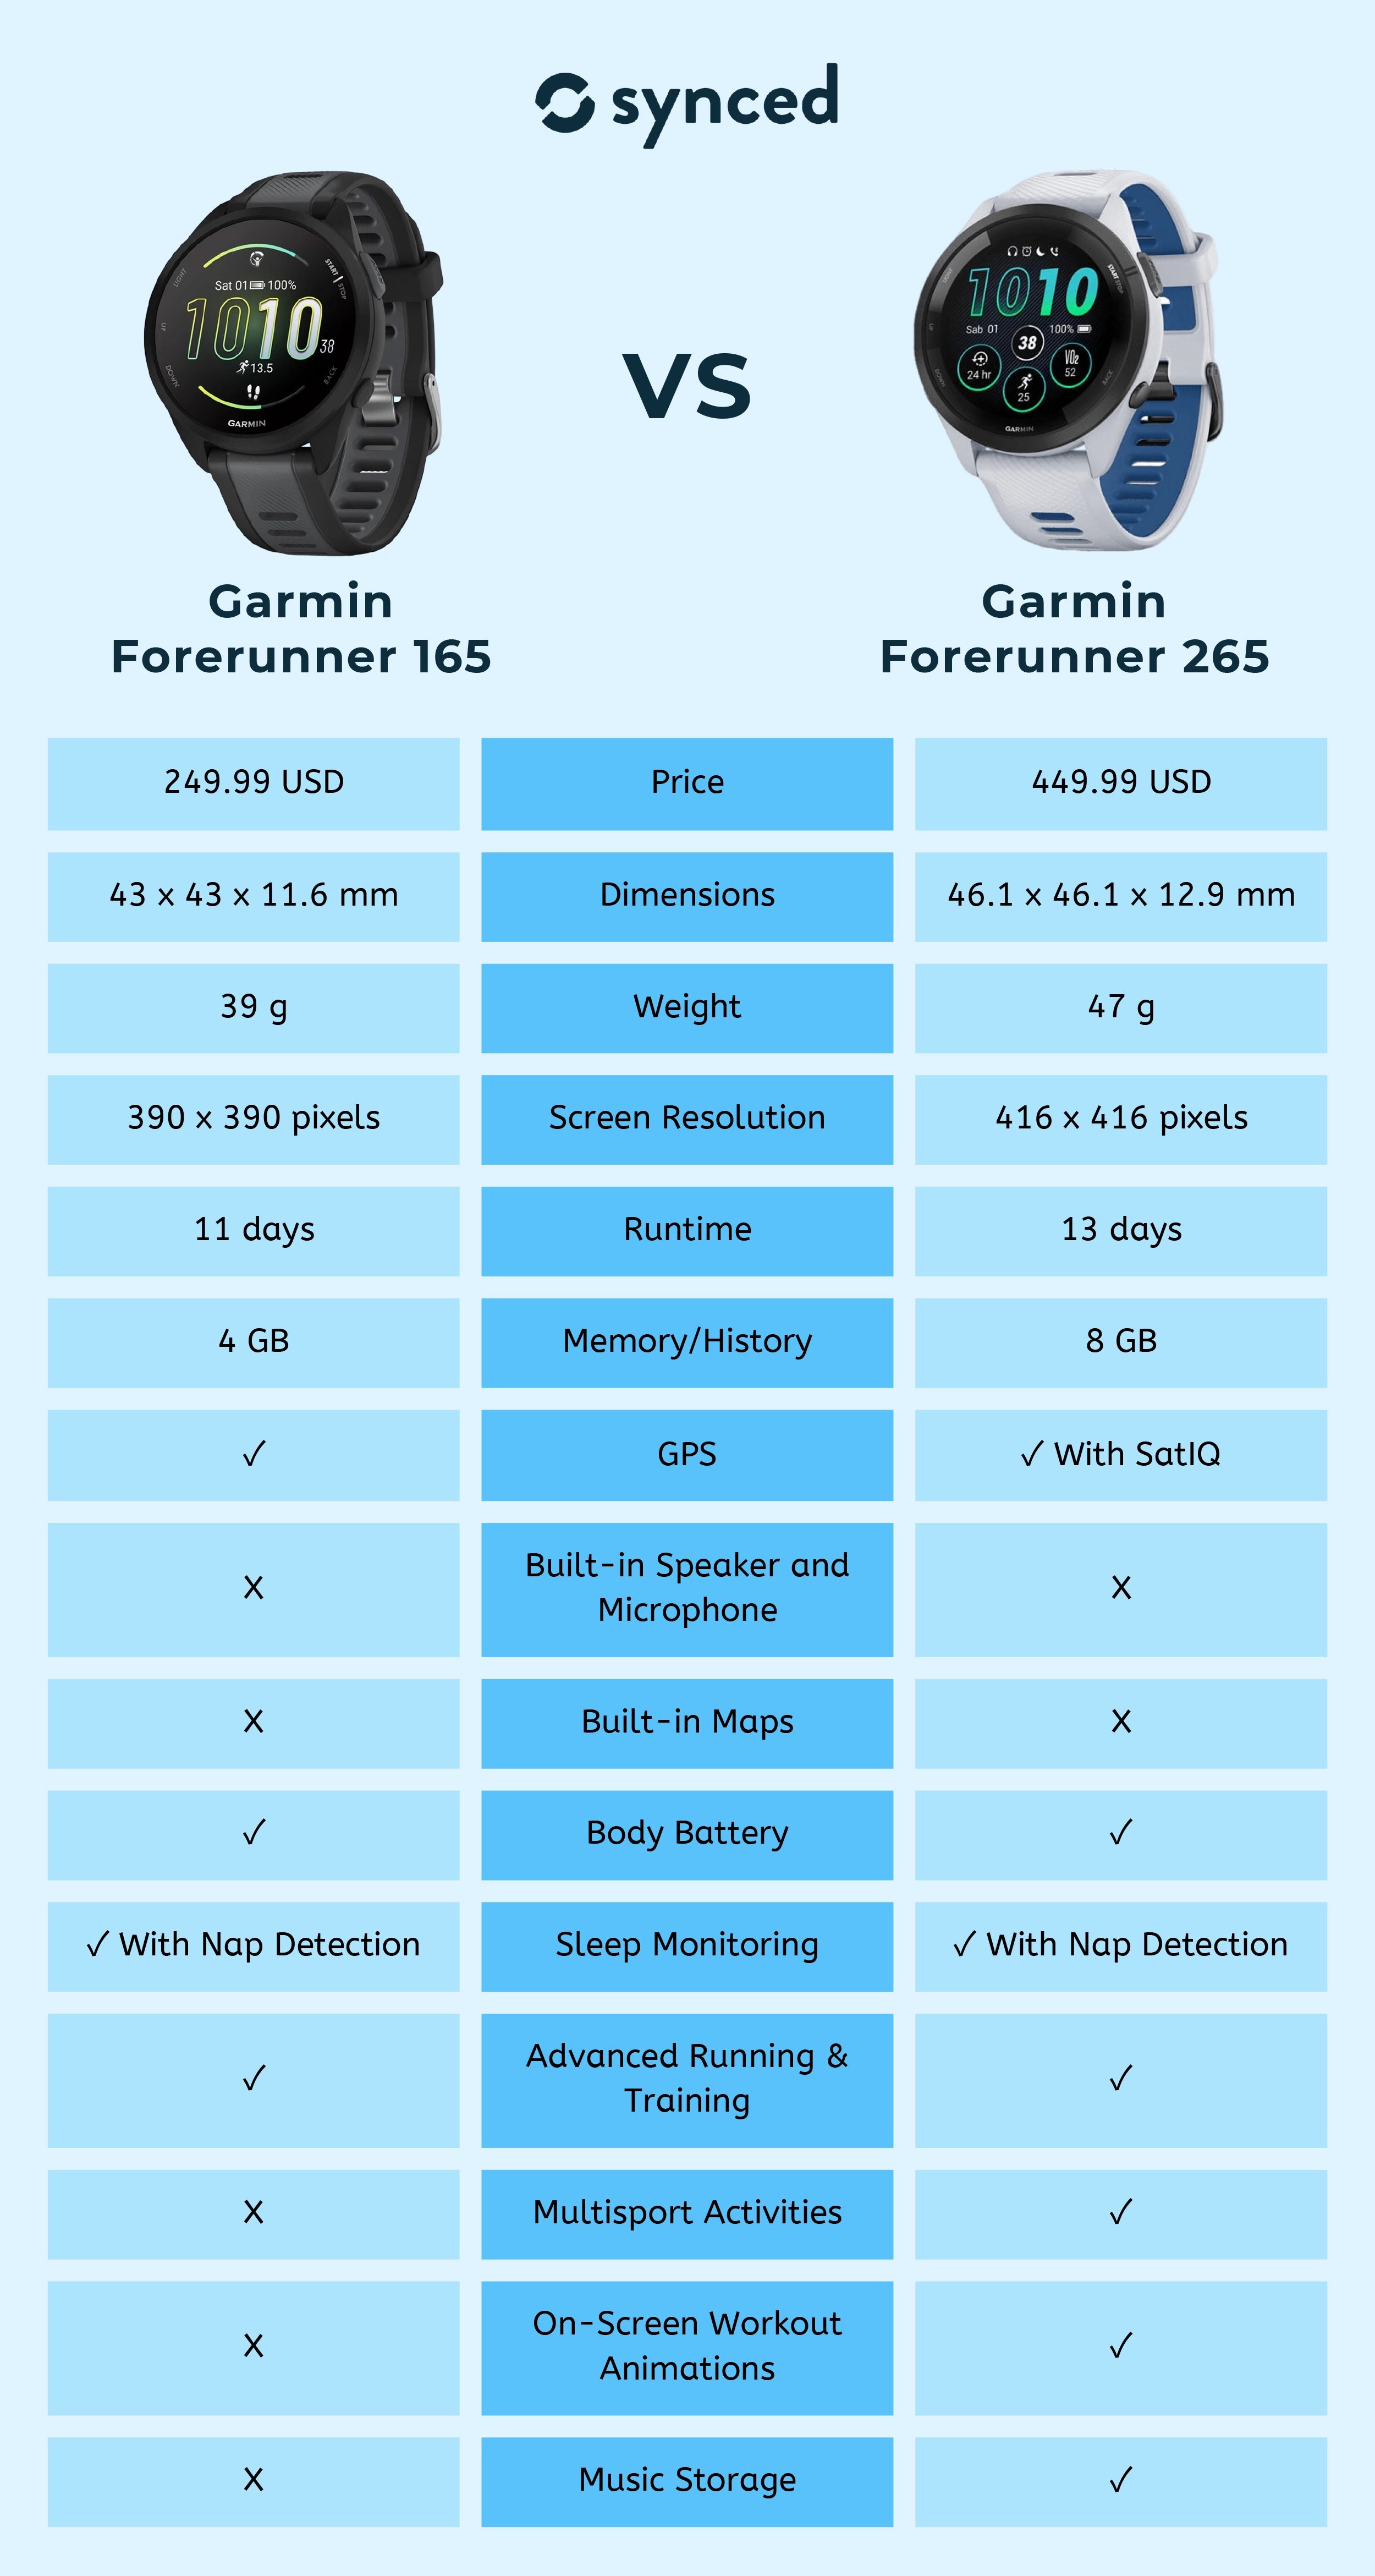 Garmin Forerunner 165 vs Garmin Forerunner 265: What's new?